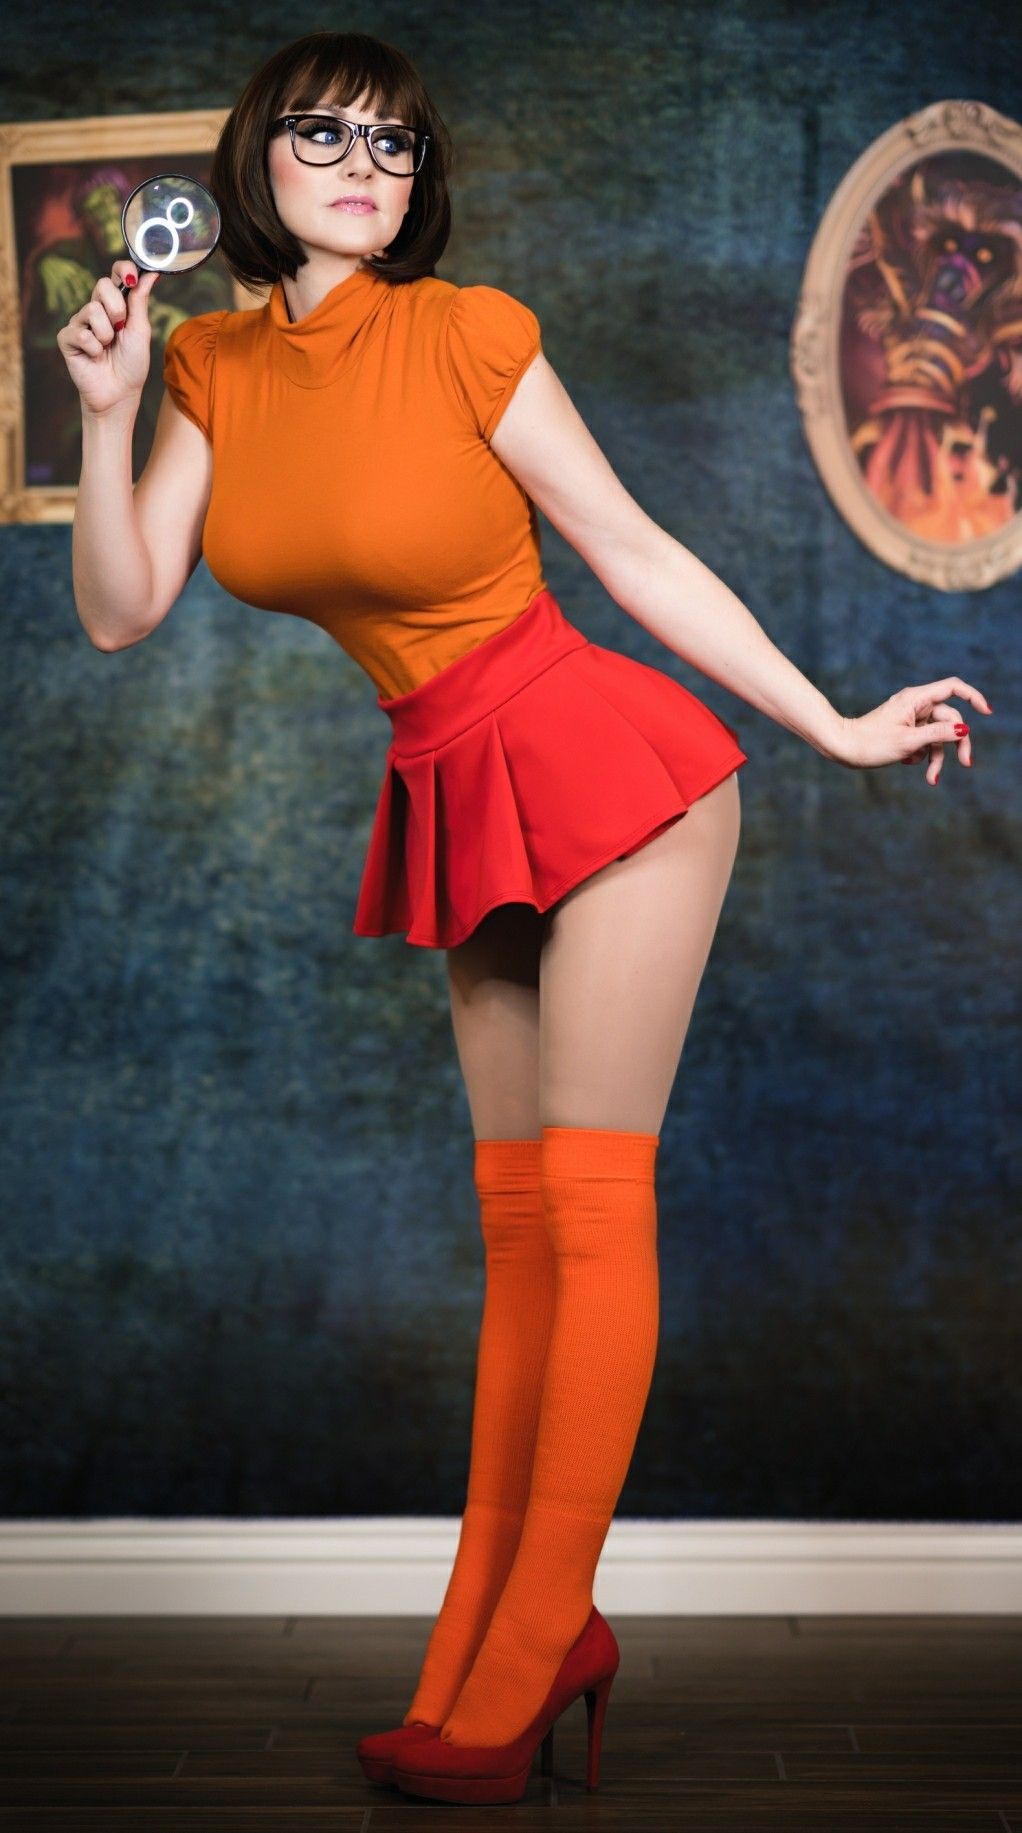 Velma Hot Cosplay photo 2